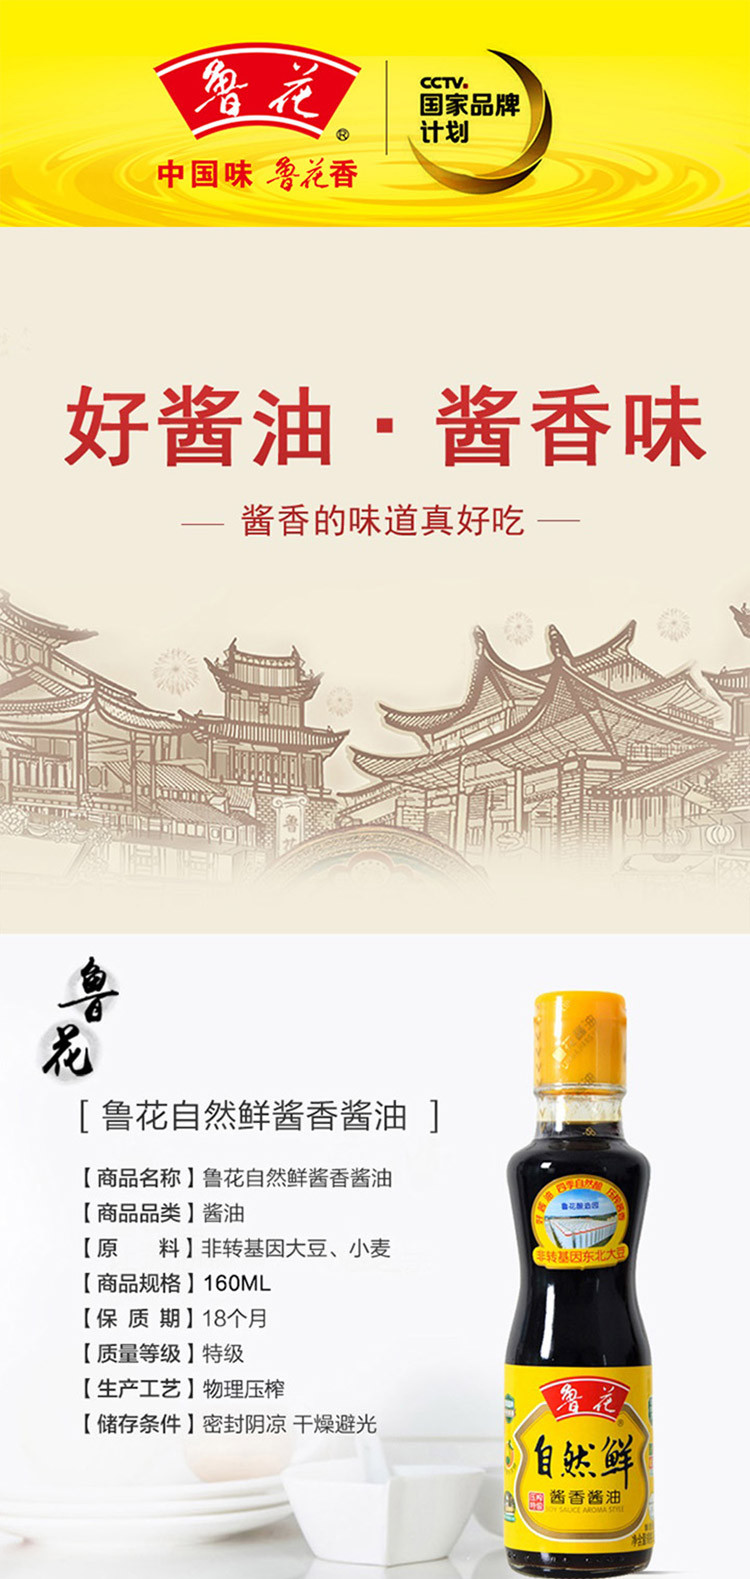 鲁花自然香料酒1L+鲁花自然鲜酱香酱油160ml